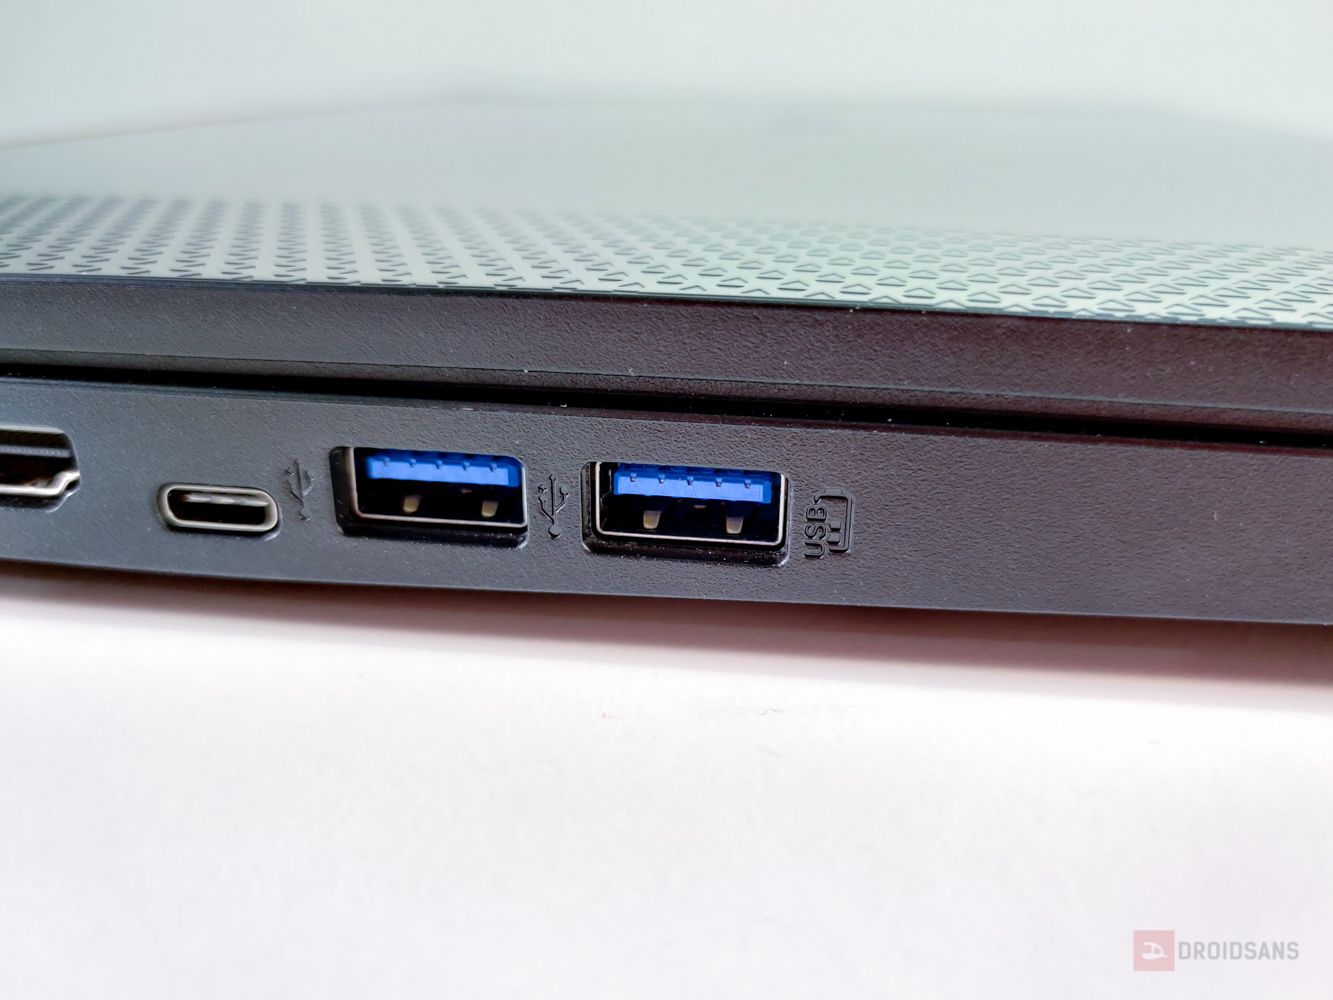 Review | รีวิว Acer Nitro 5 เกมมิ่งโน้ตบุ๊คราคาประหยัด Ryzen 7 3750H + GTX 1650 + จอ 120Hz เพียง 20,900 บาท